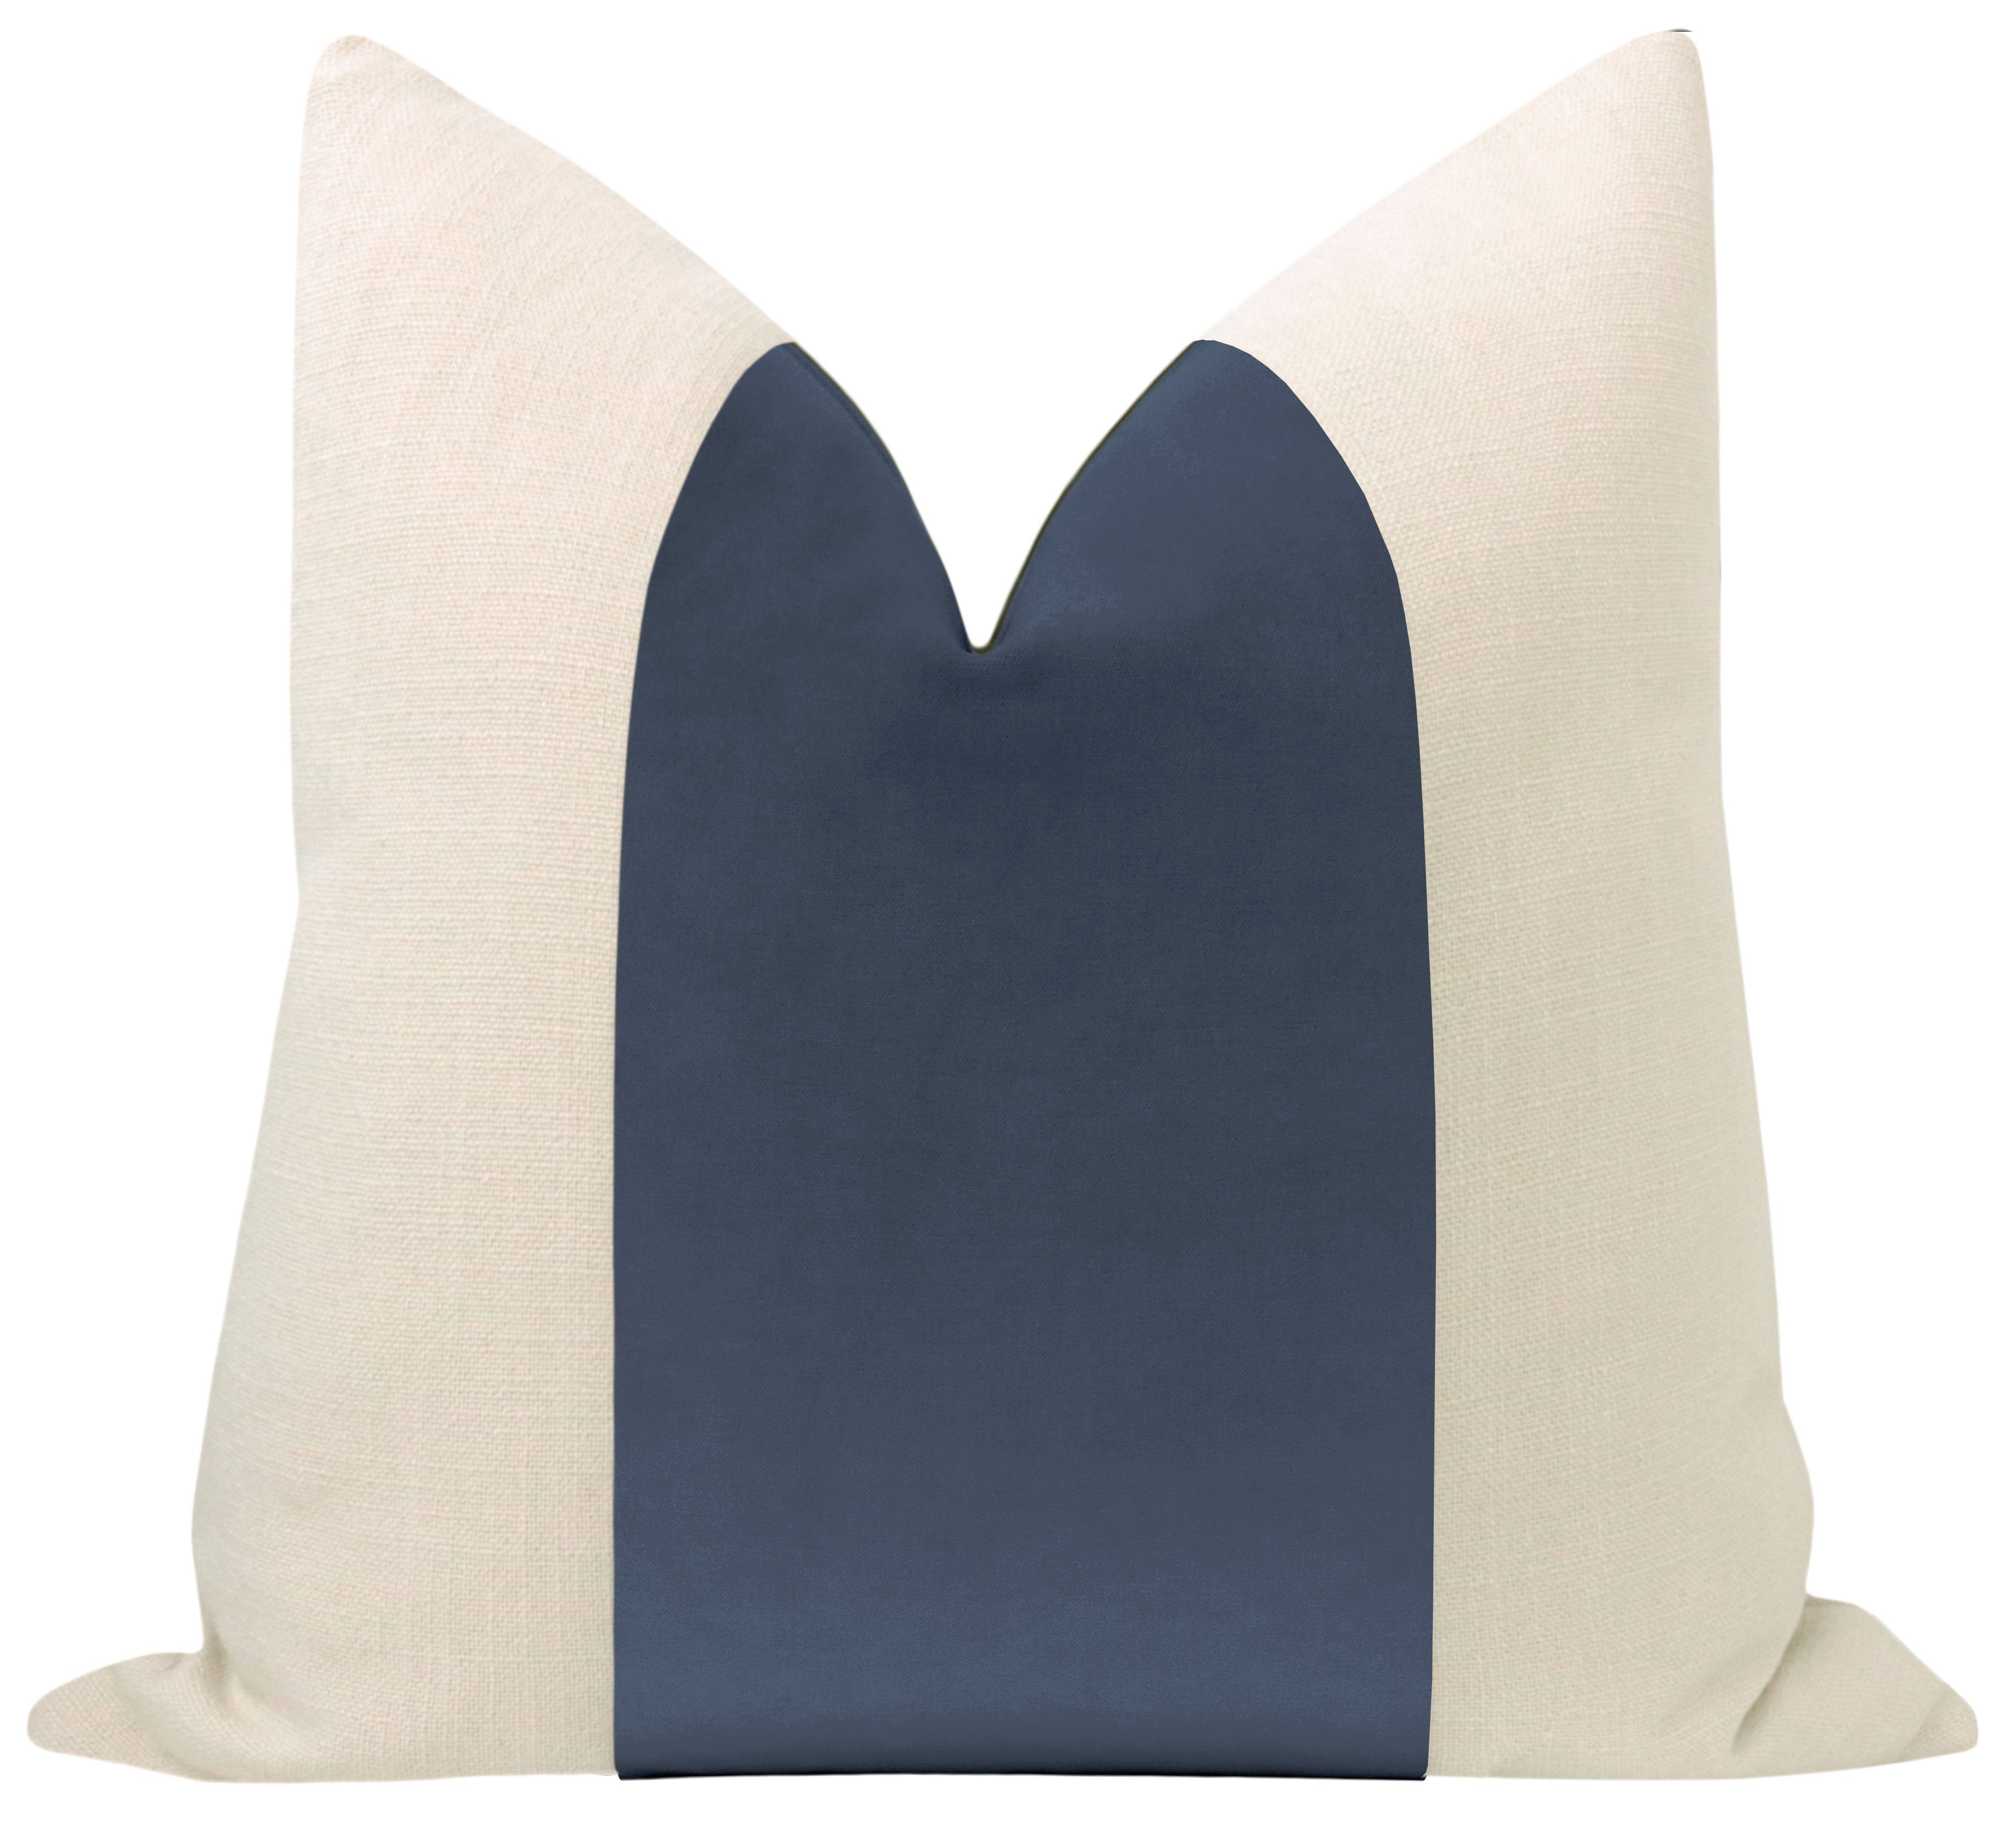 Classic Velvet Pillow Cover, Capri Blue, 20" x 20" - Image 0